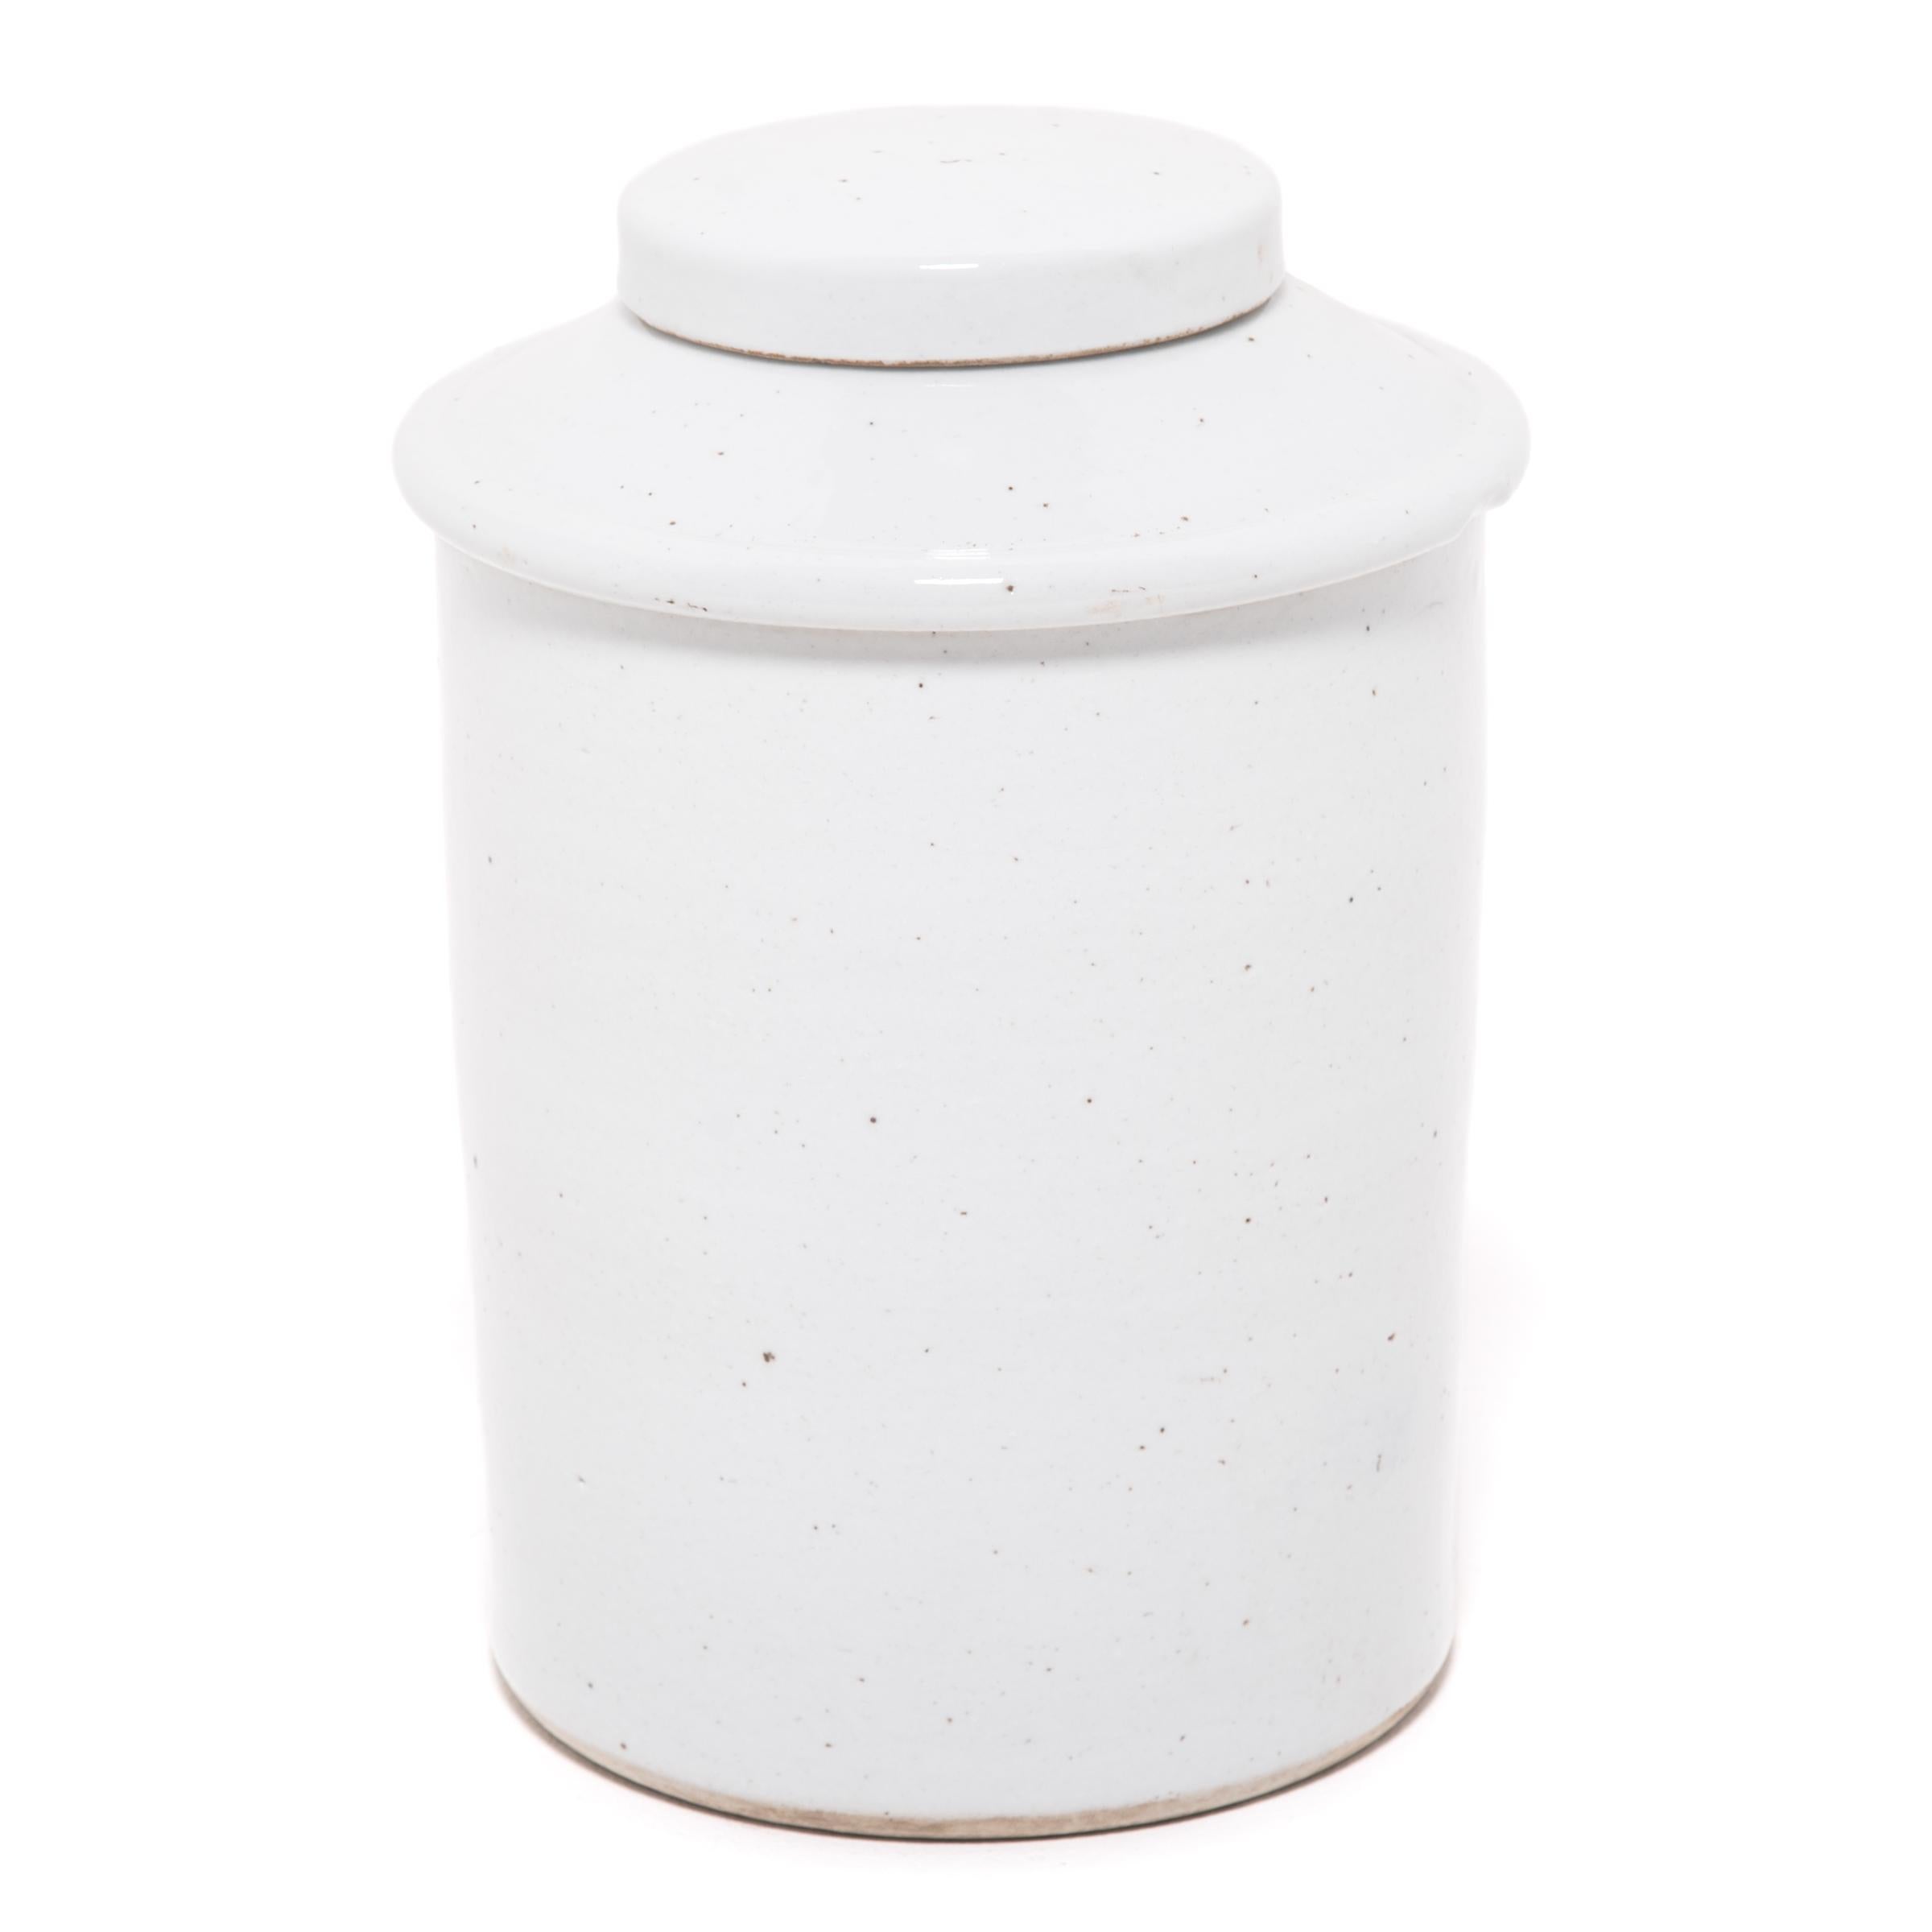 Rendue dans un glaçage blanc frappant, cette jarre contemporaine en porcelaine offre une interprétation moderne d'une forme classique. Les jarres à couvercle de ce type étaient utilisées dans les salons de thé en Chine, où la consommation de thé